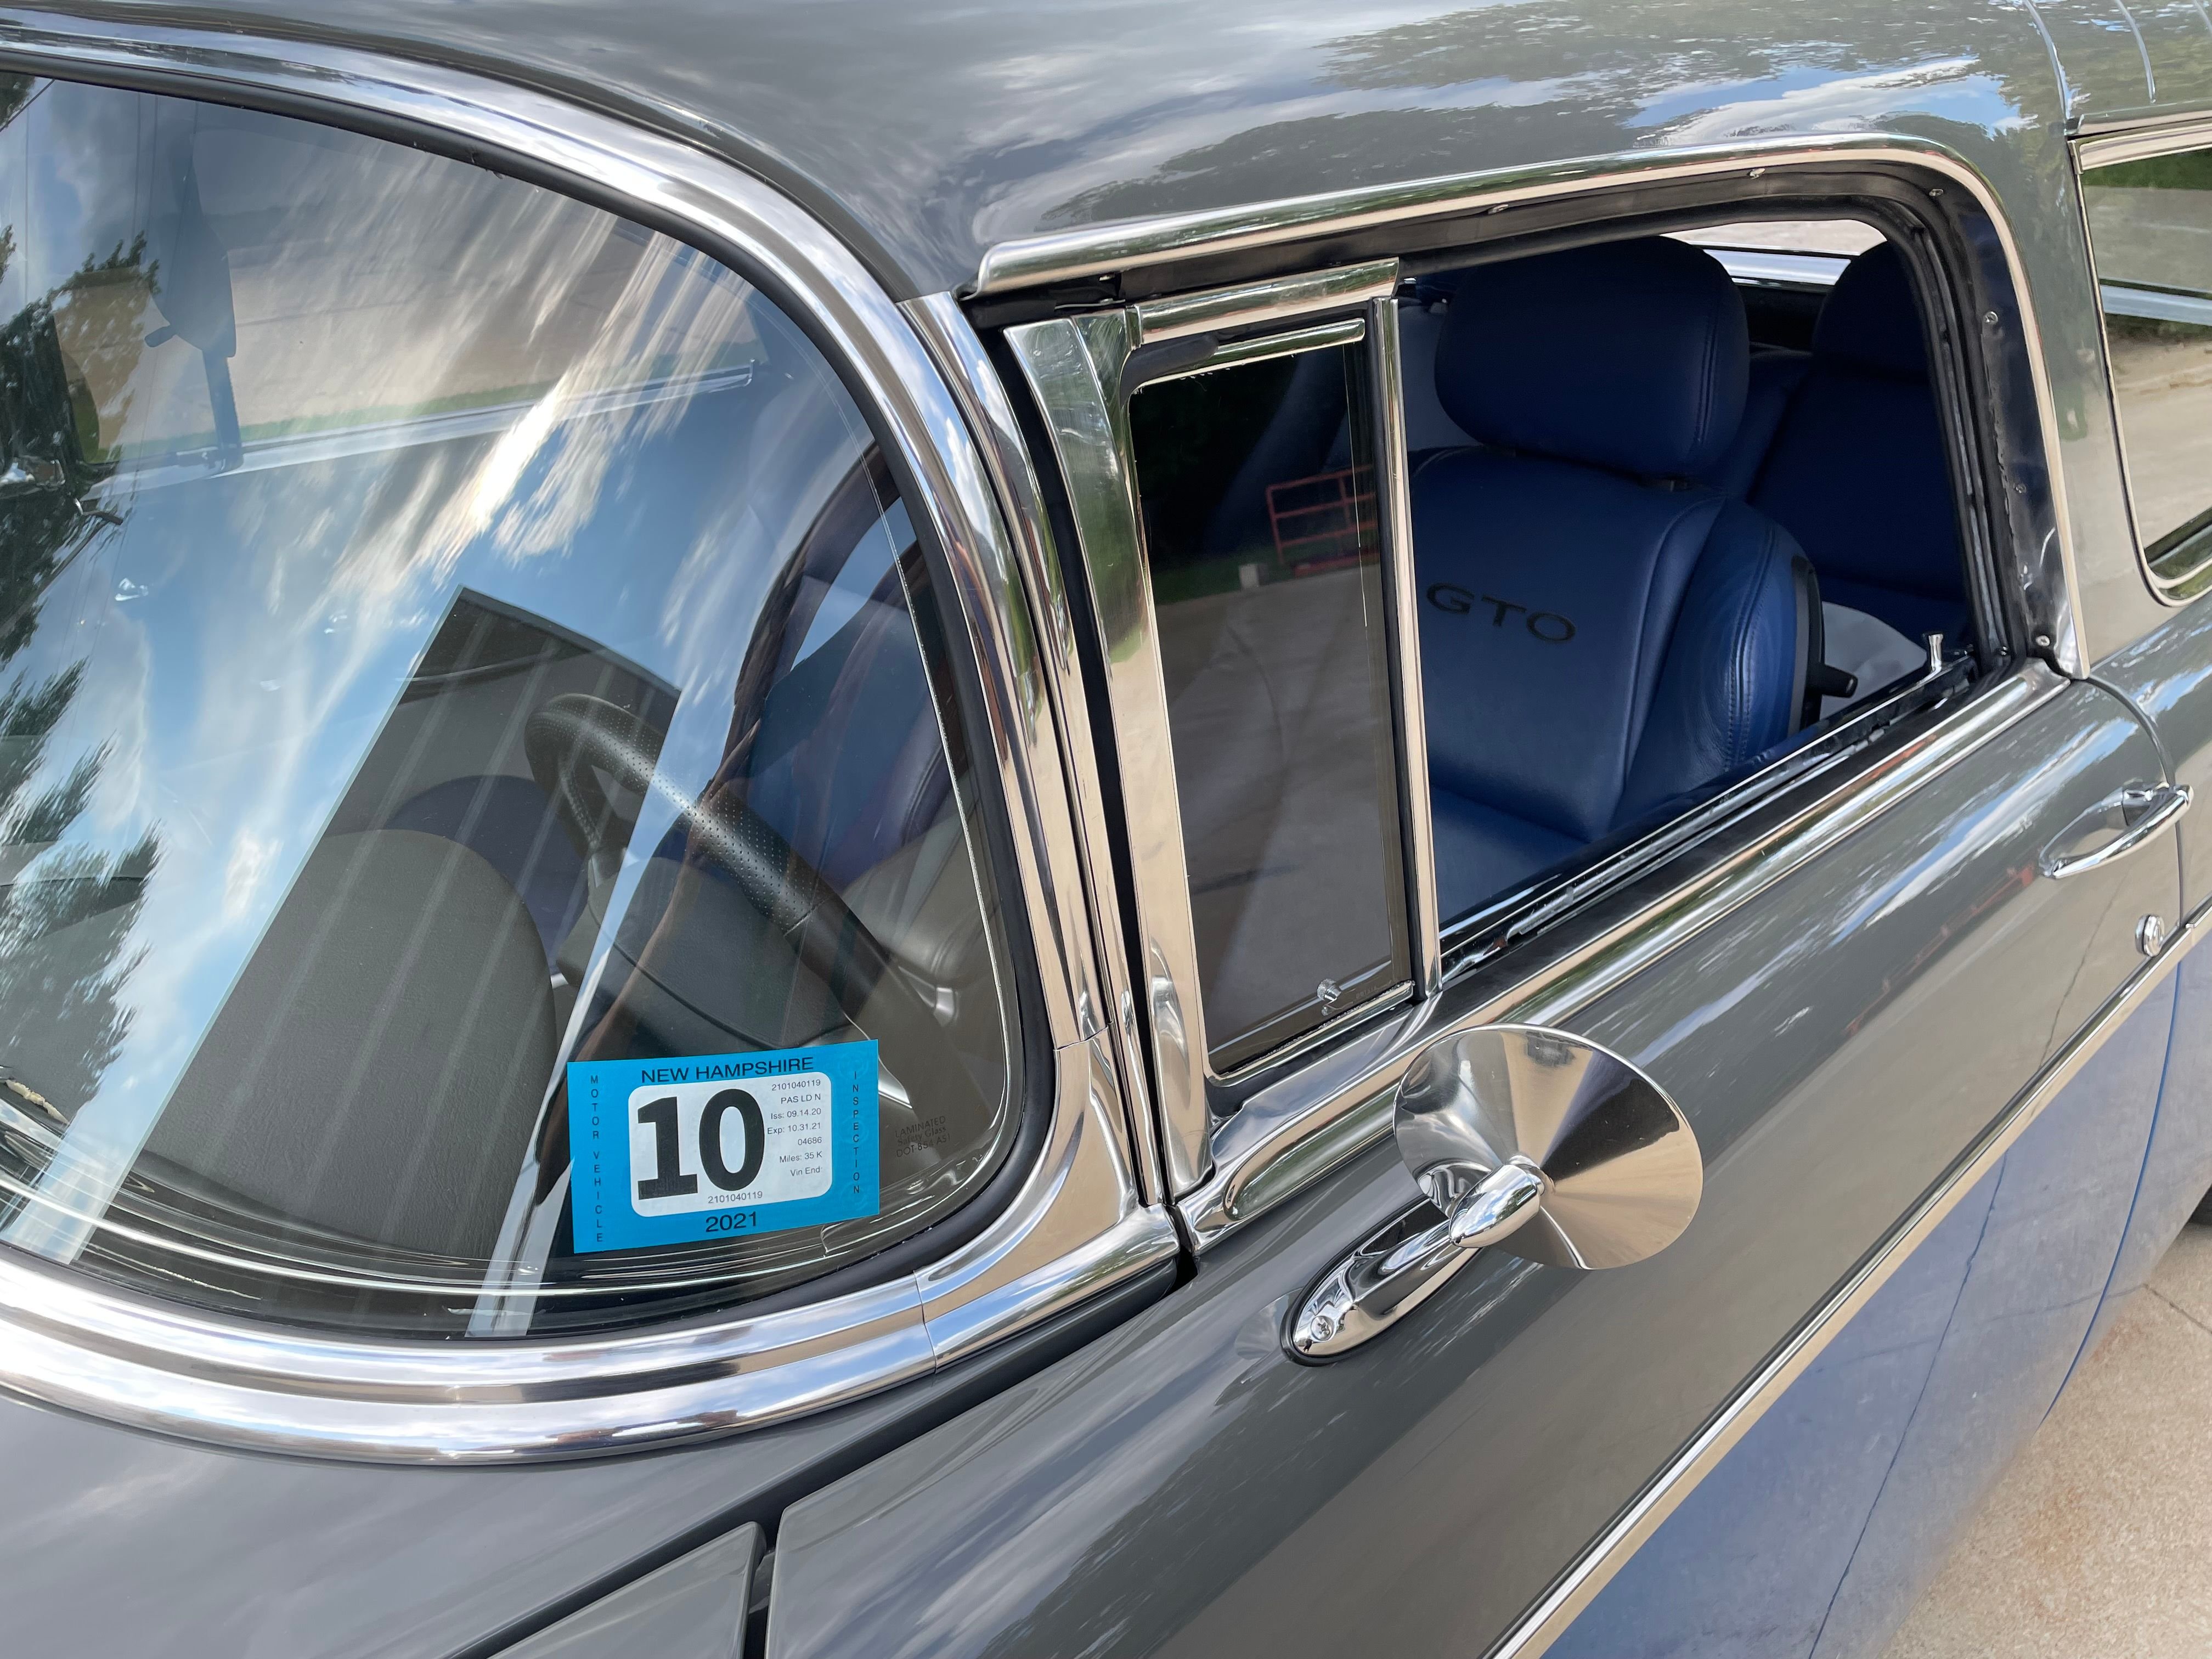 1955 Chevrolet Nomad